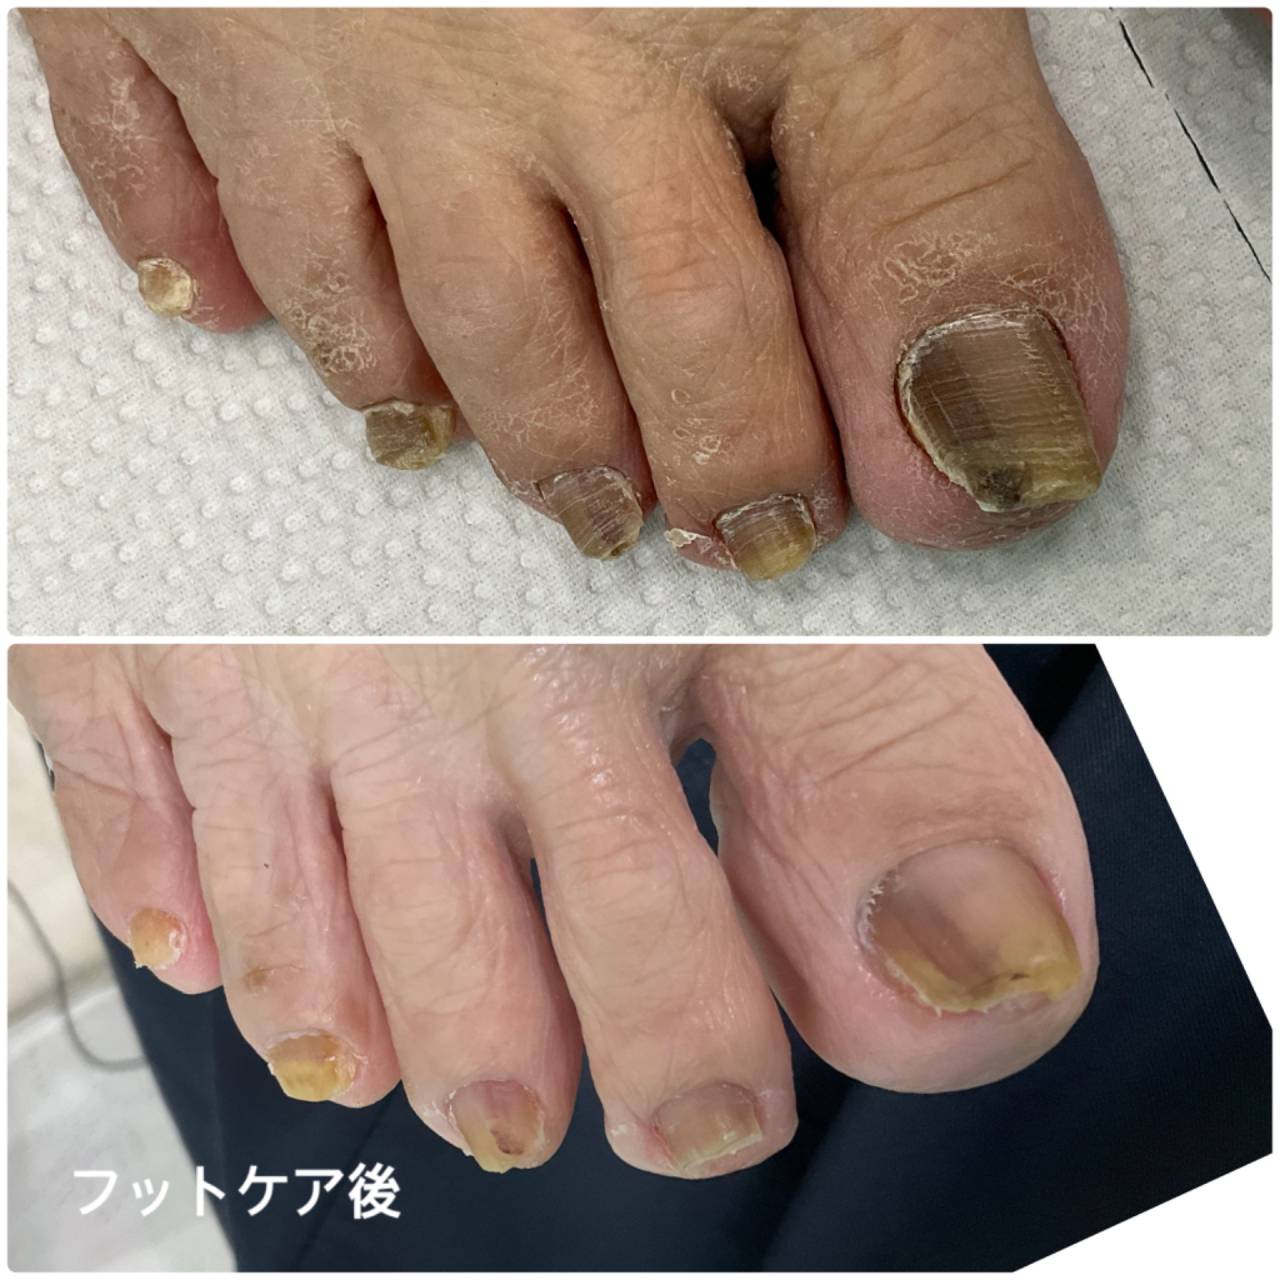 高齢者の足の爪ケア 分厚い爪、巻き爪、切りにくい爪